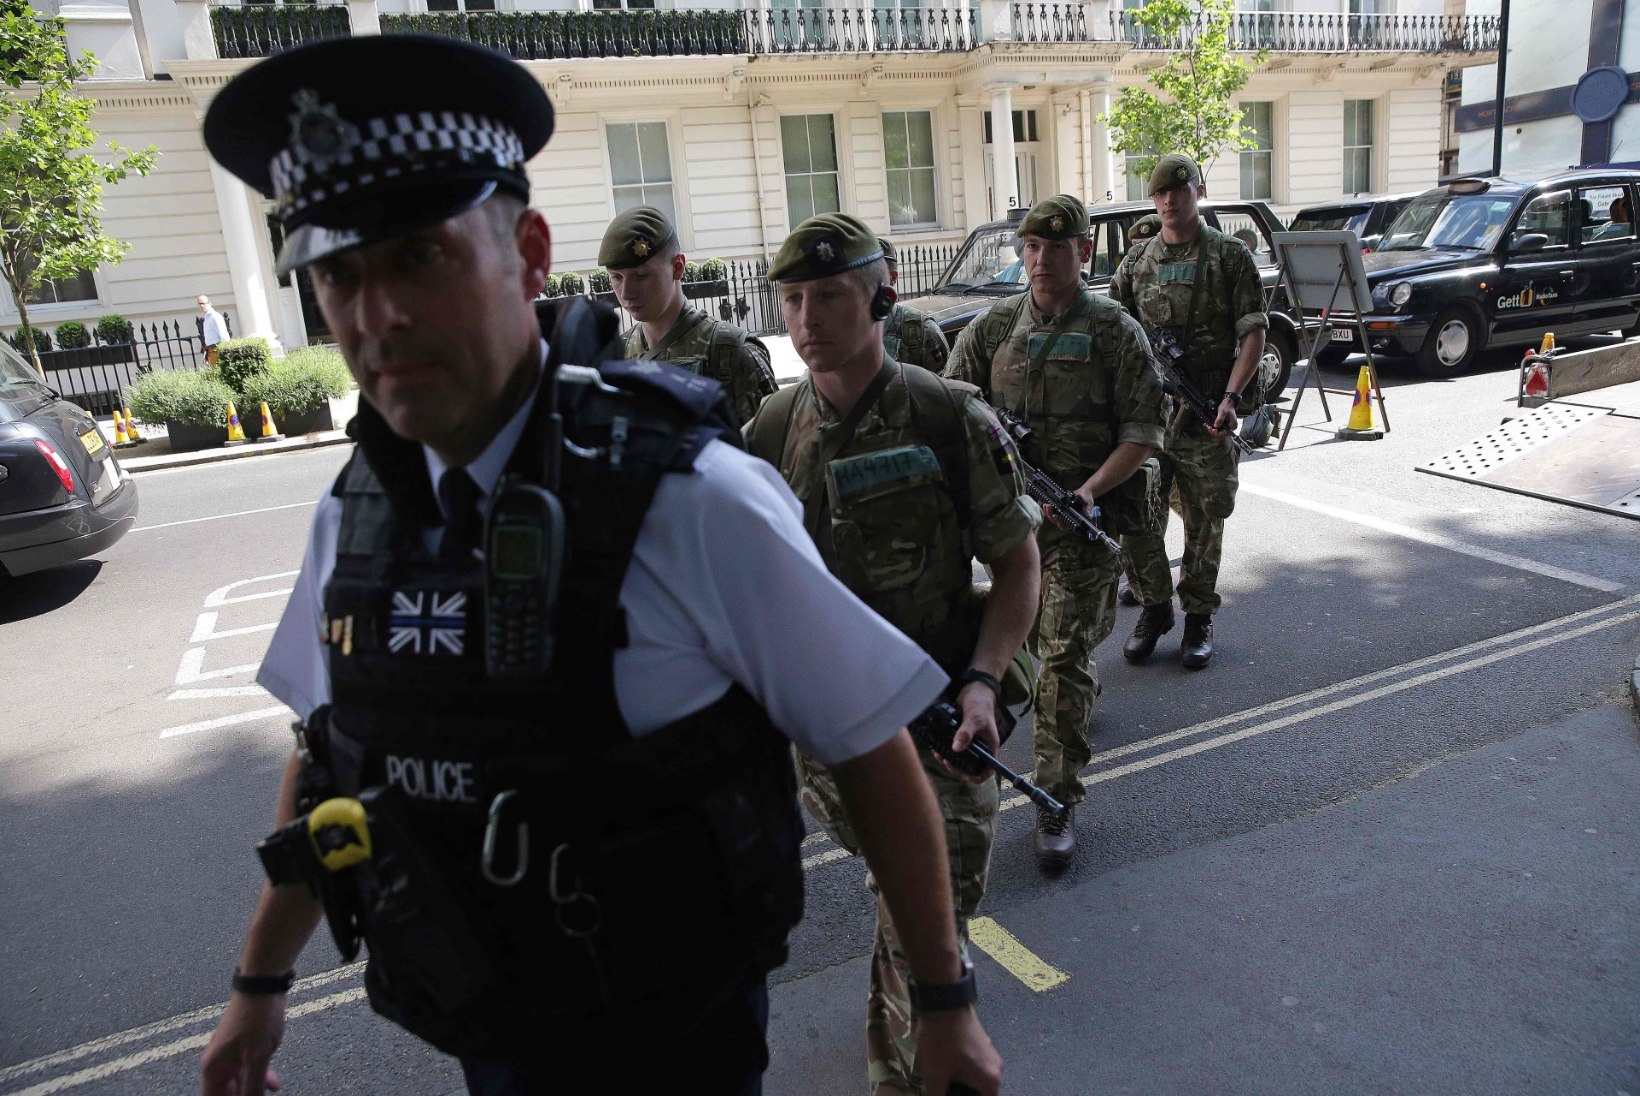 Manchester Arena terrorist oli kõigest käsutäitja, politsei otsib pommi valmistajat